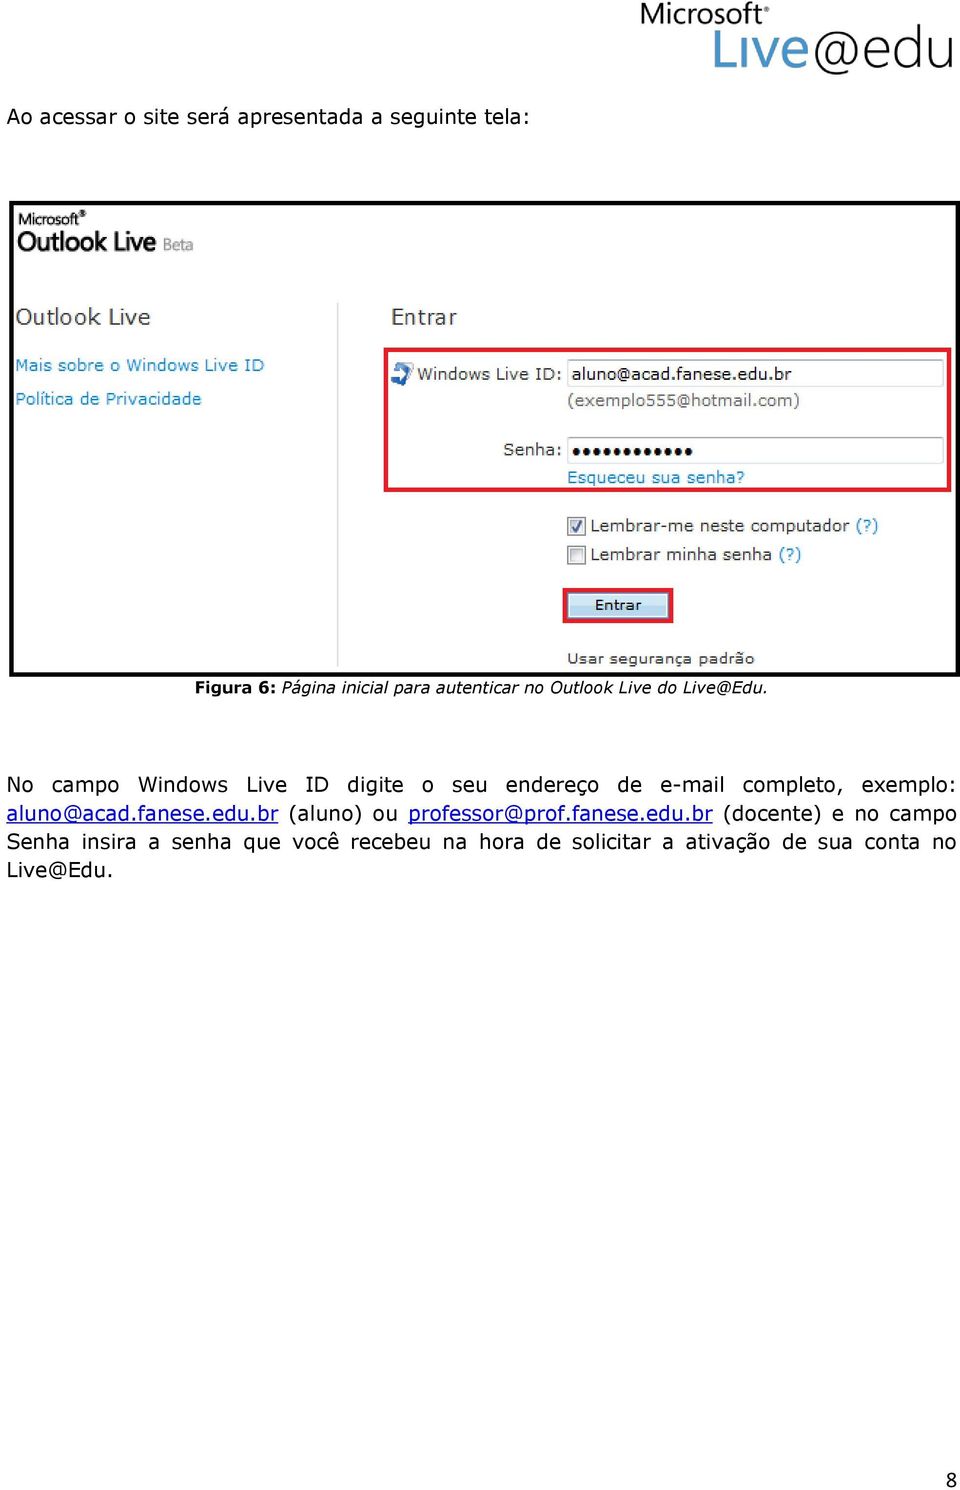 No campo Windows Live ID digite o seu endereço de e-mail completo, exemplo: aluno@acad.fanese.